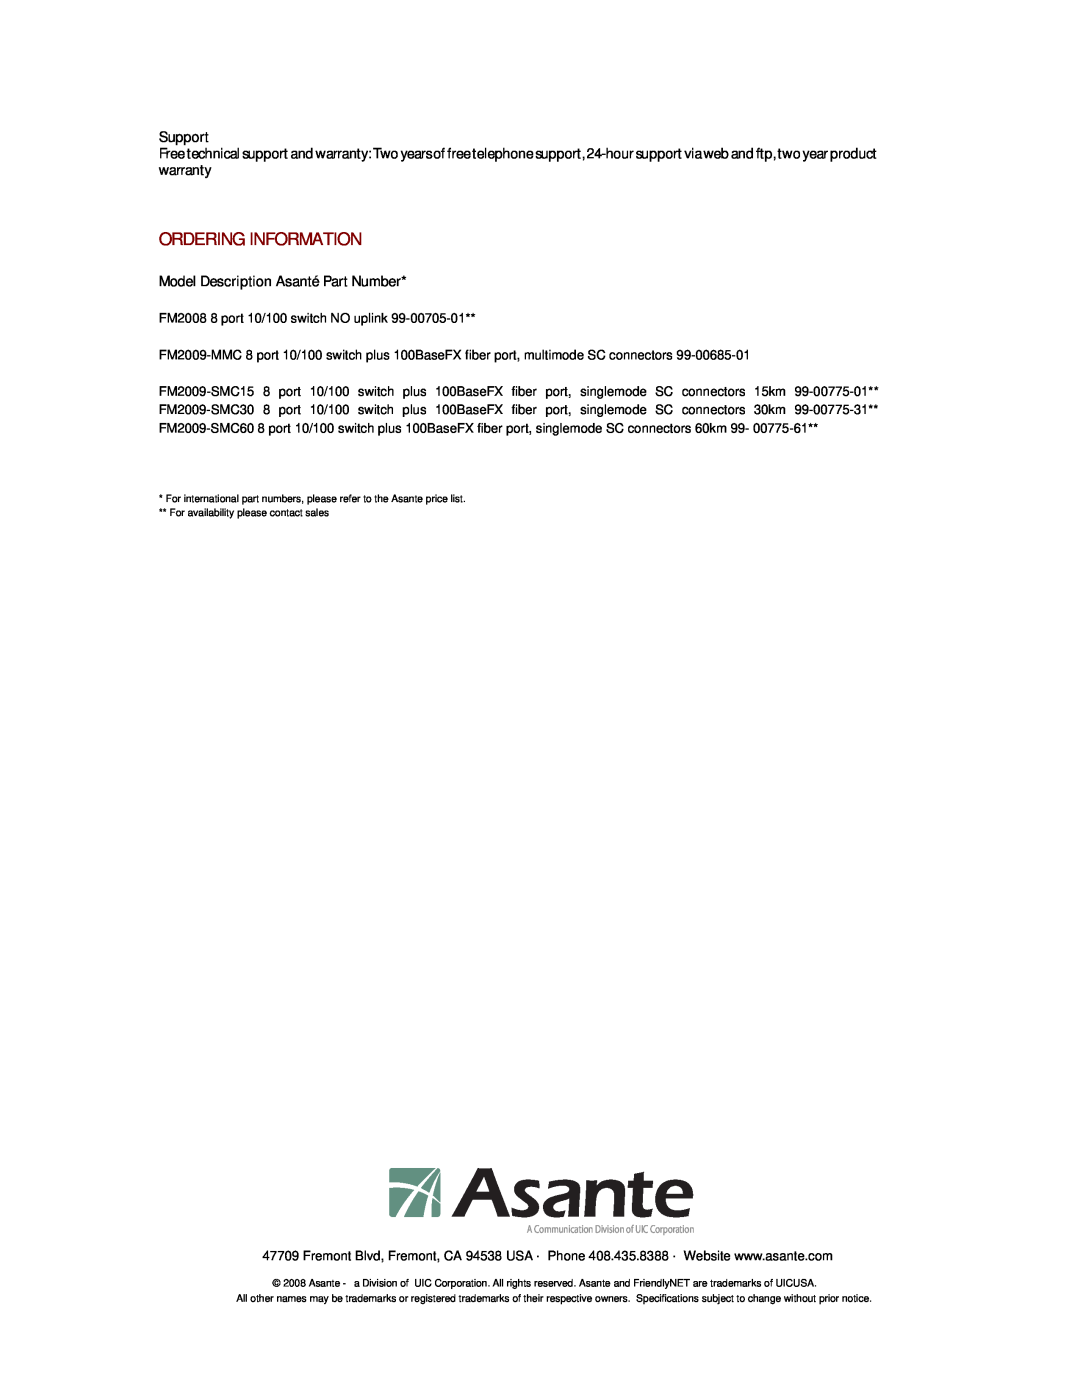 Asante Technologies FM2008/9 manual Ordering Information, Support, Model Description Asanté Part Number 